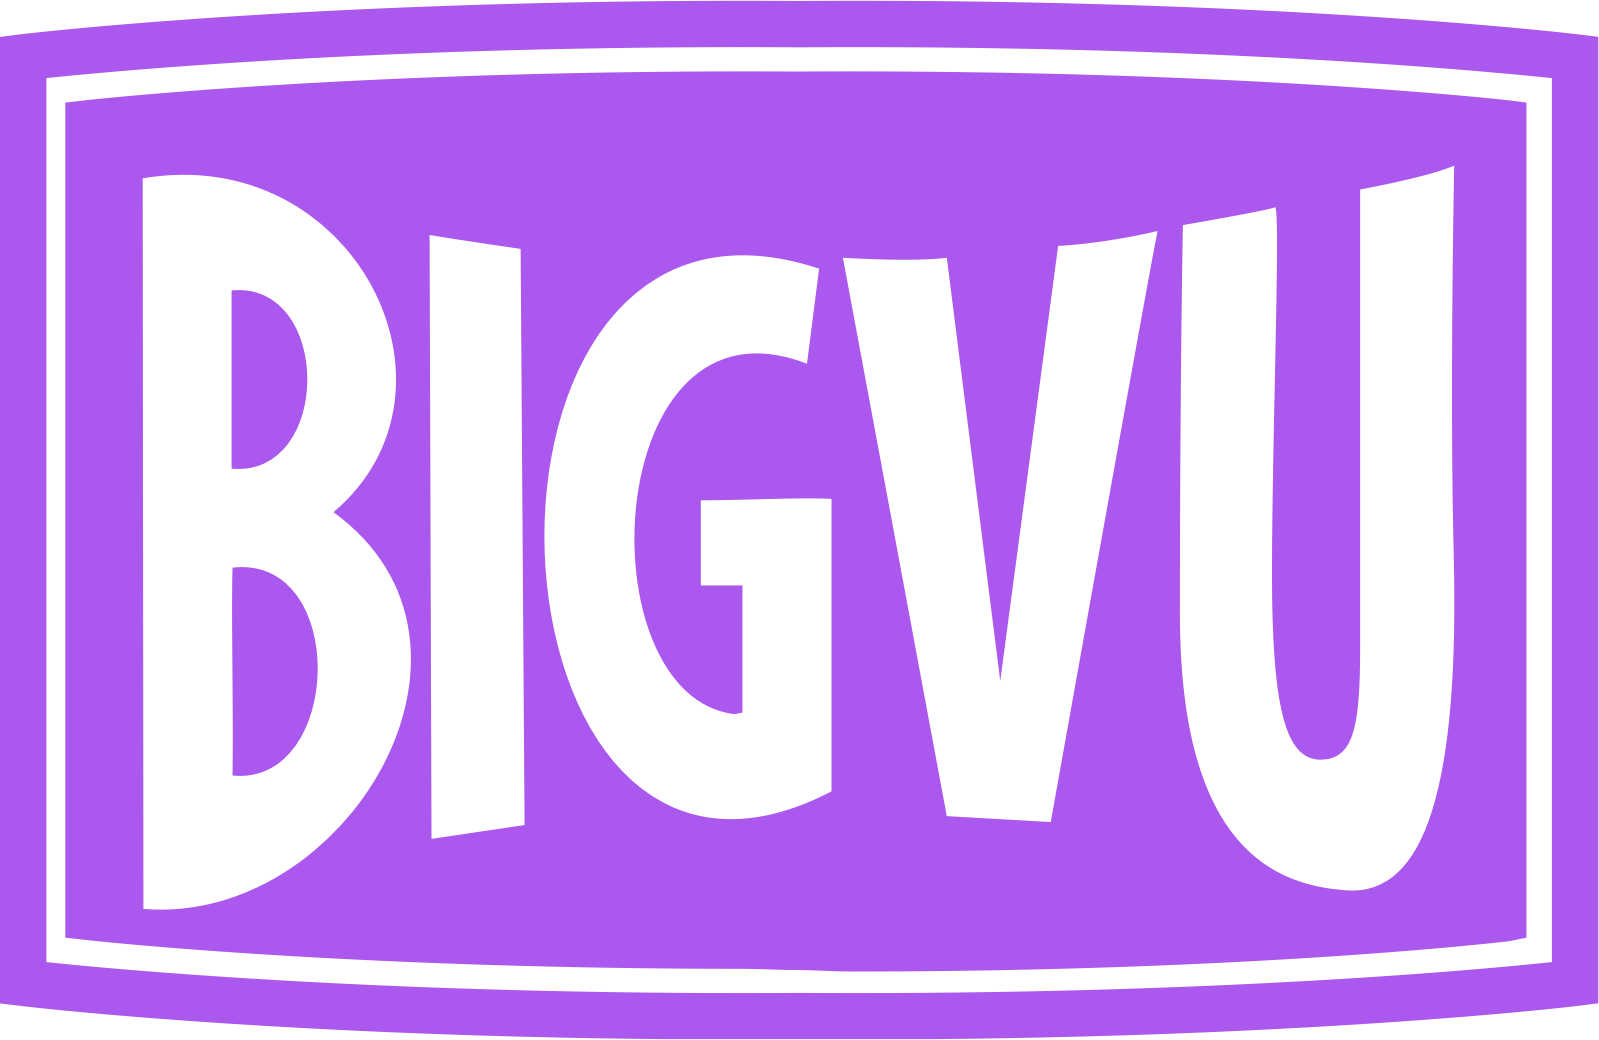 bigvu logo